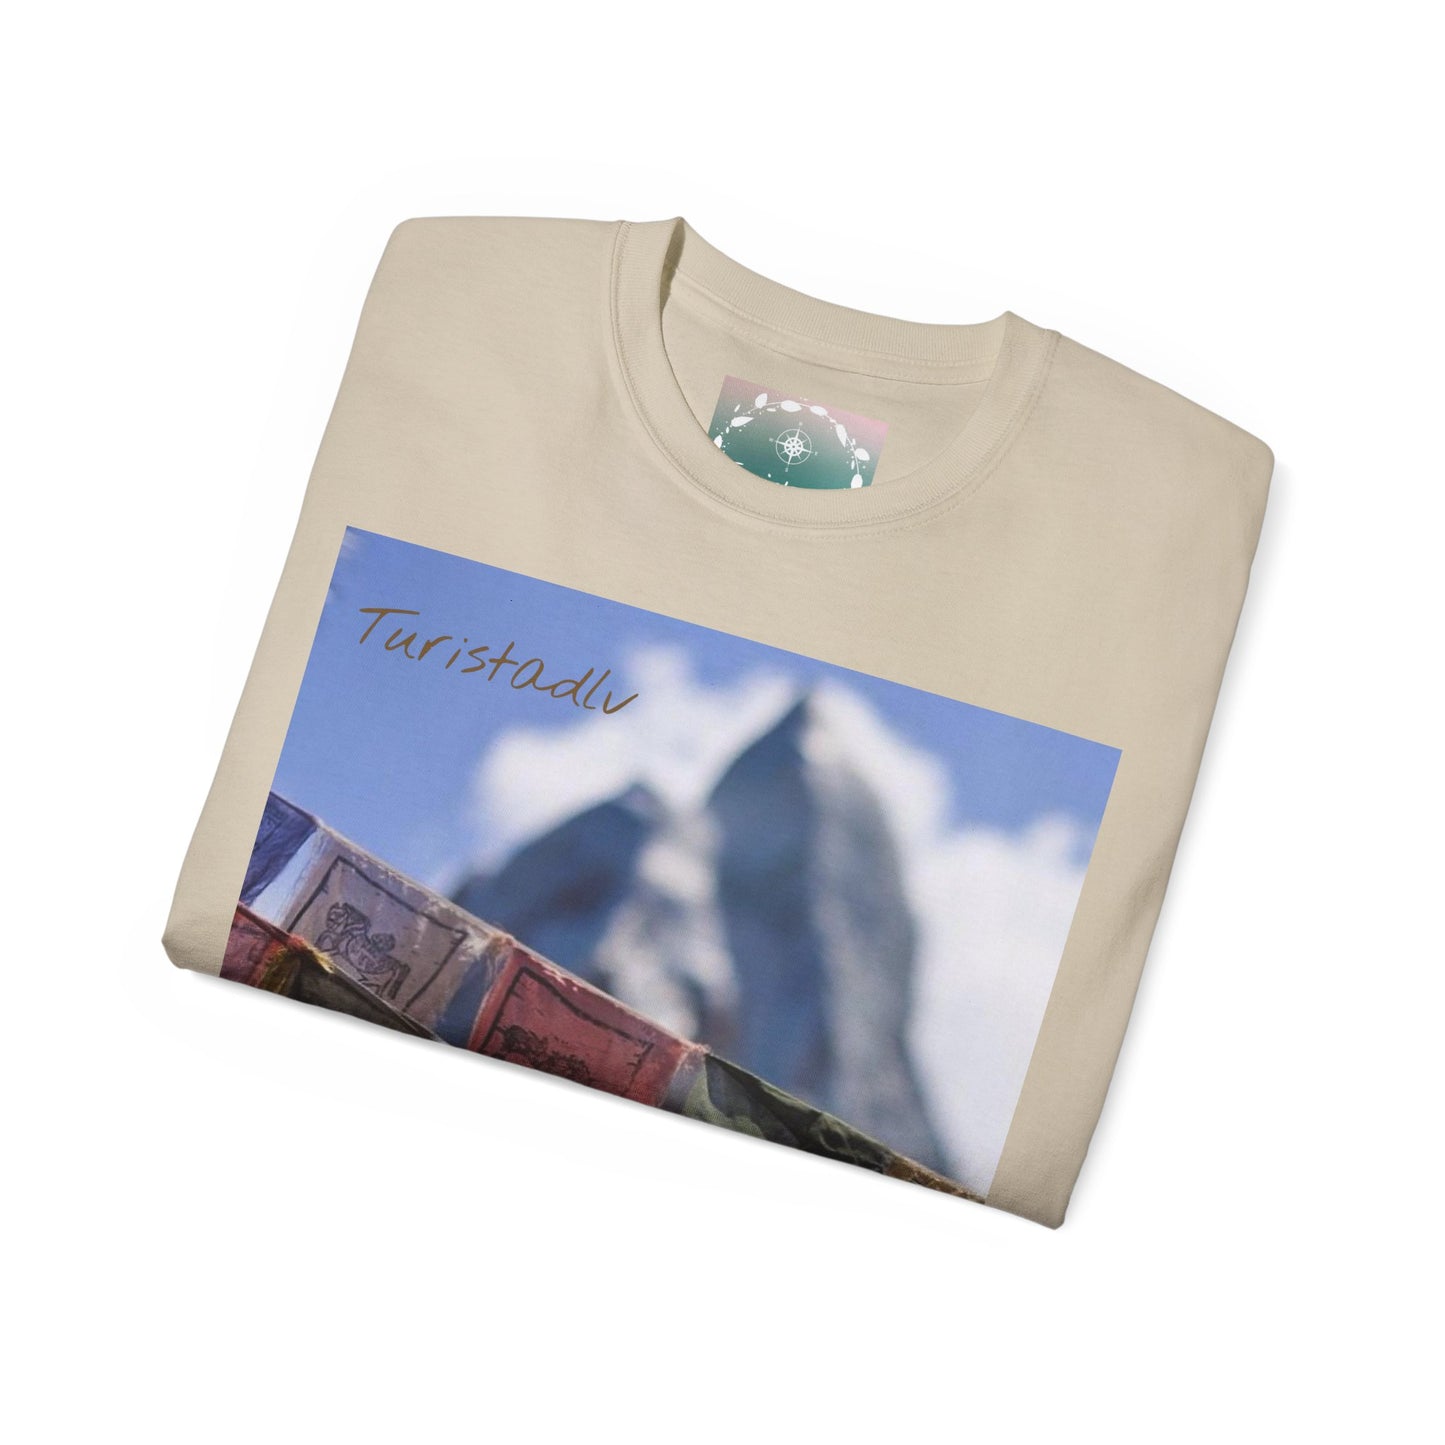 Camiseta de cordillera, camiseta de montaña, regalo viajero, camiseta de viajero, regalo de viajes, camiseta aventura, Himalaya, montañero